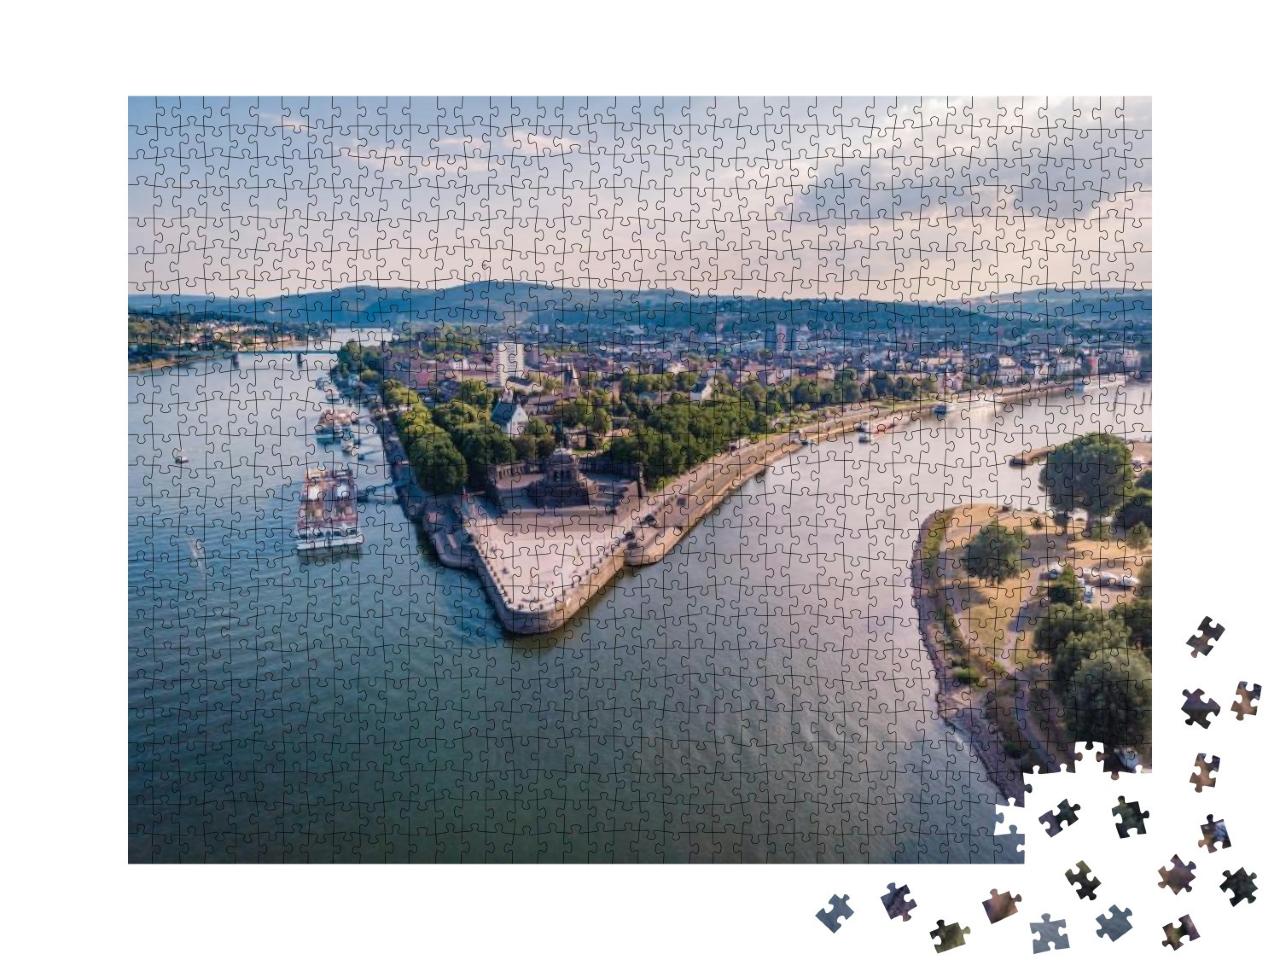 Puzzle 1000 Teile „Deutsches Eck in Koblenz: Zusammenfluss von Rhein und Mosel“